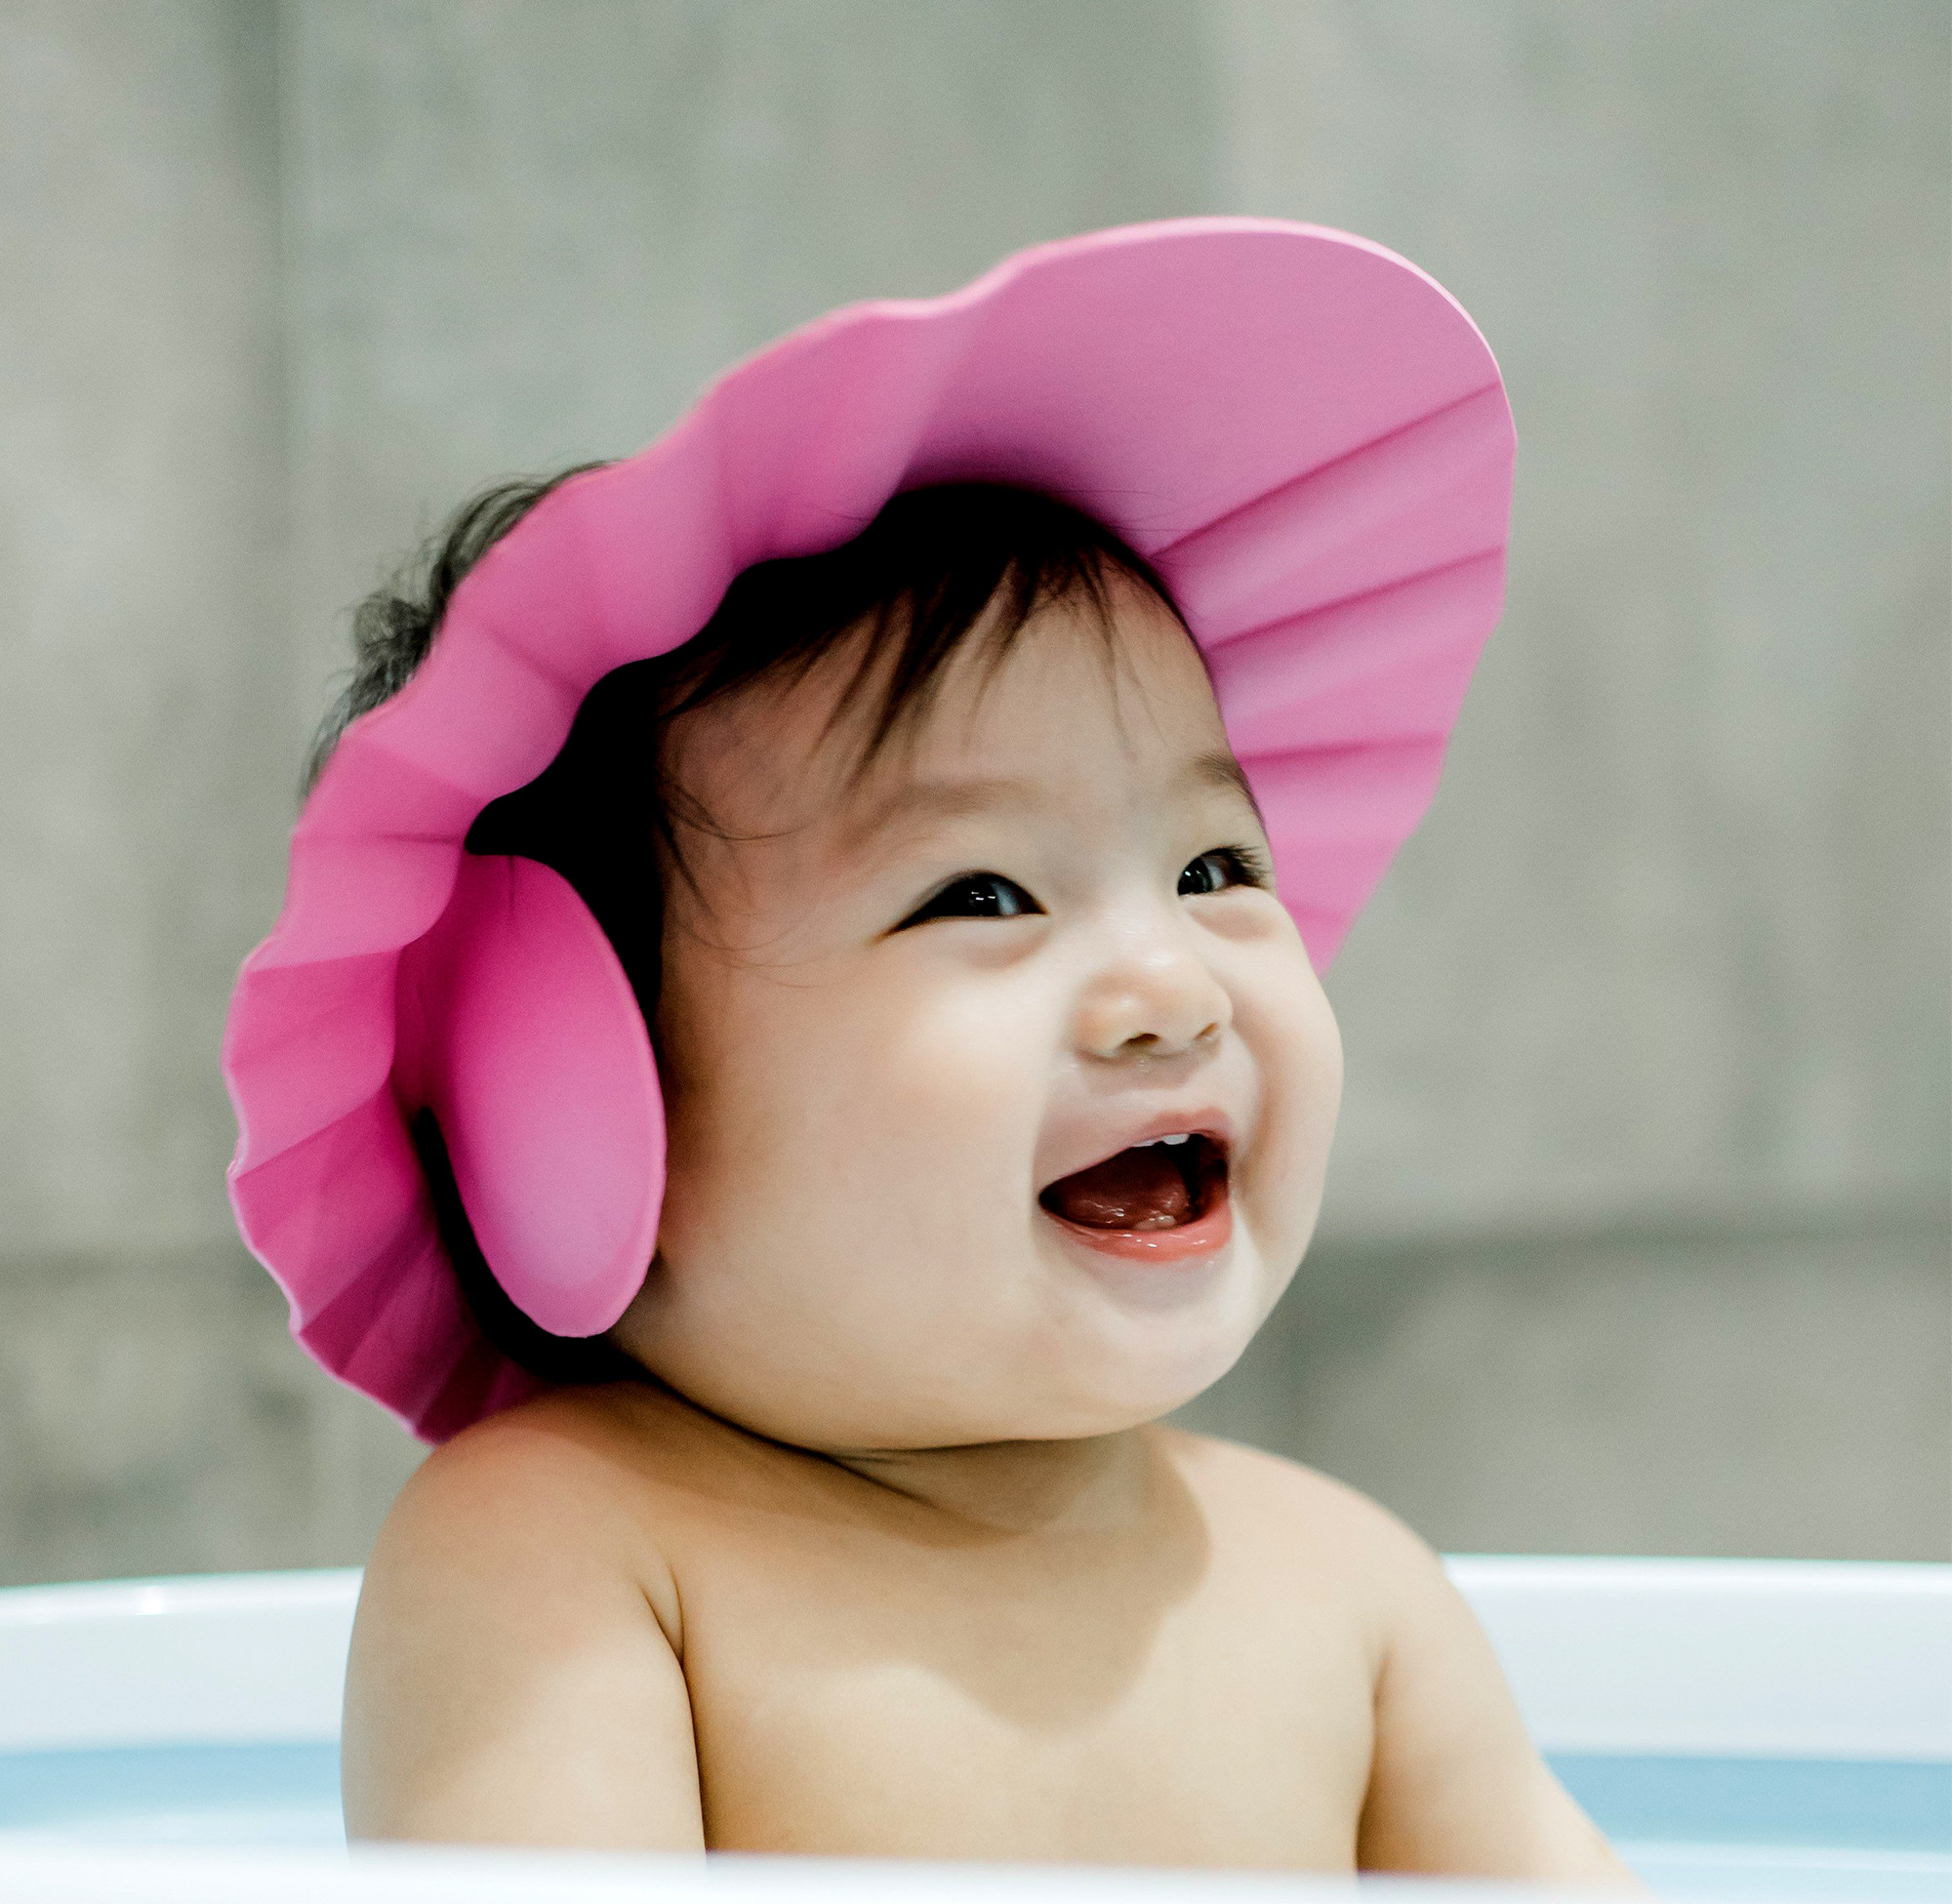 Kuber Industries Soft Adjustable Visor Hat Safe Shampoo Shower Bathing Protection Bath Cap for Toddler, Baby, Kids, Children (Pink)-HS_38_KUBMART21347